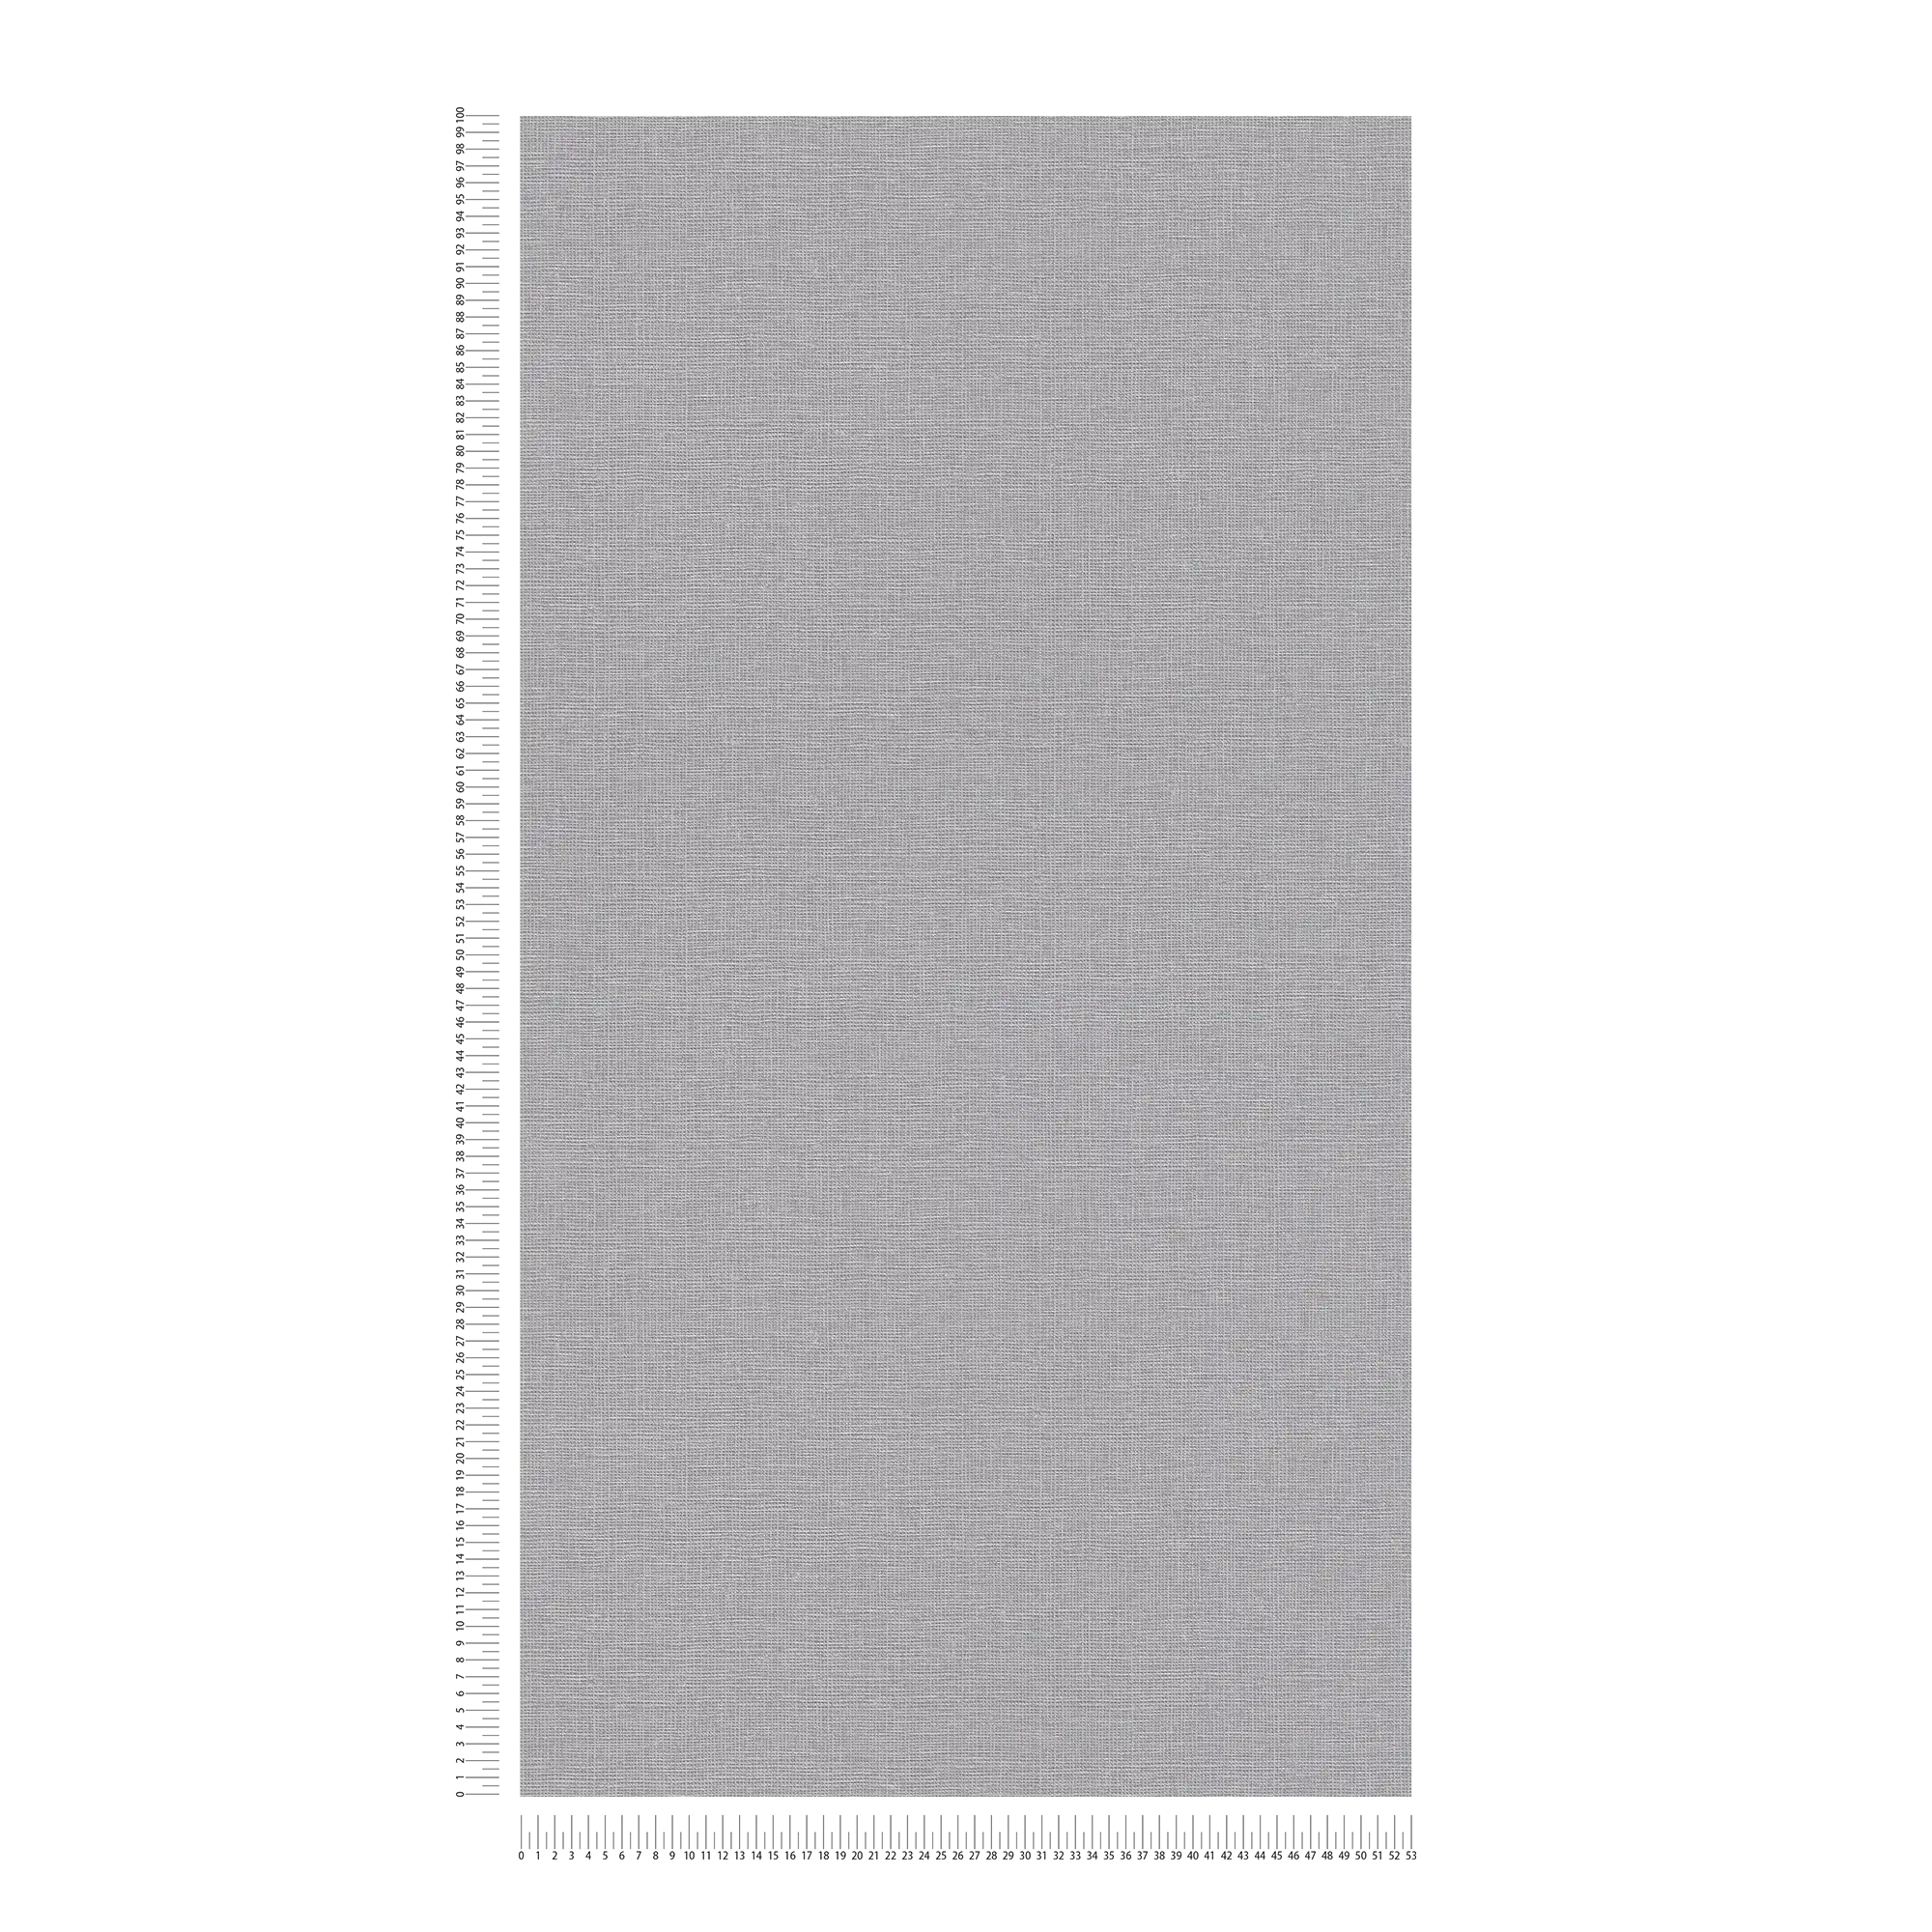             Non-woven wallpaper plain with linen texture - dark grey
        